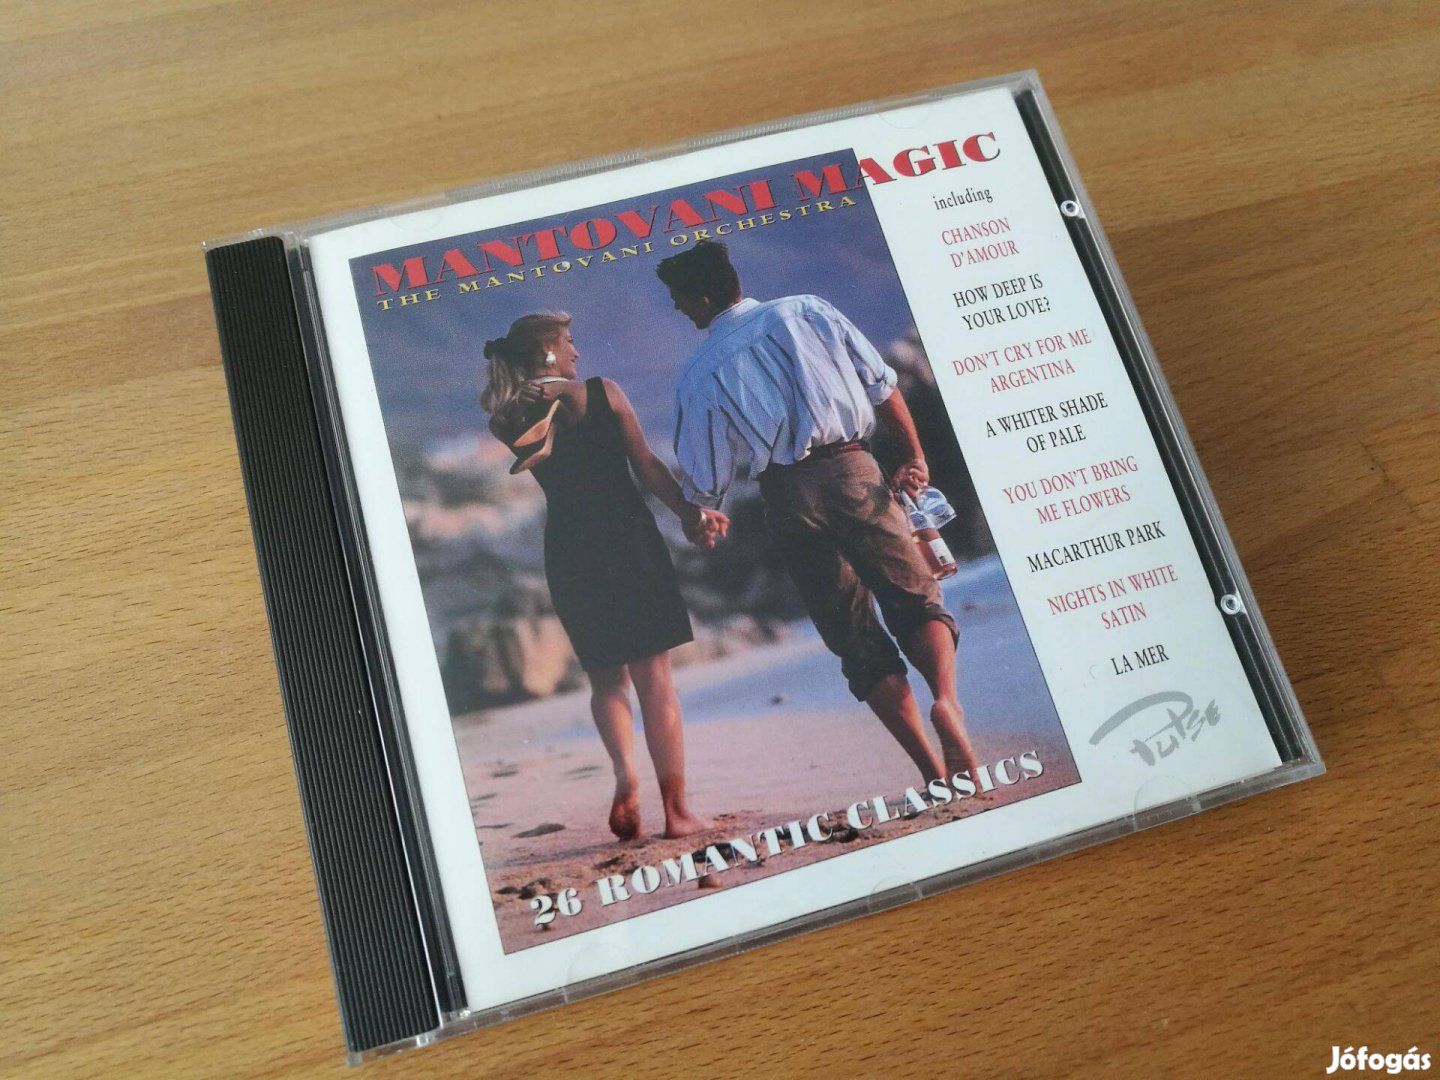 Mantovani Magic - 20 romantic classics (Kaz Records, UK, 1997, CD)